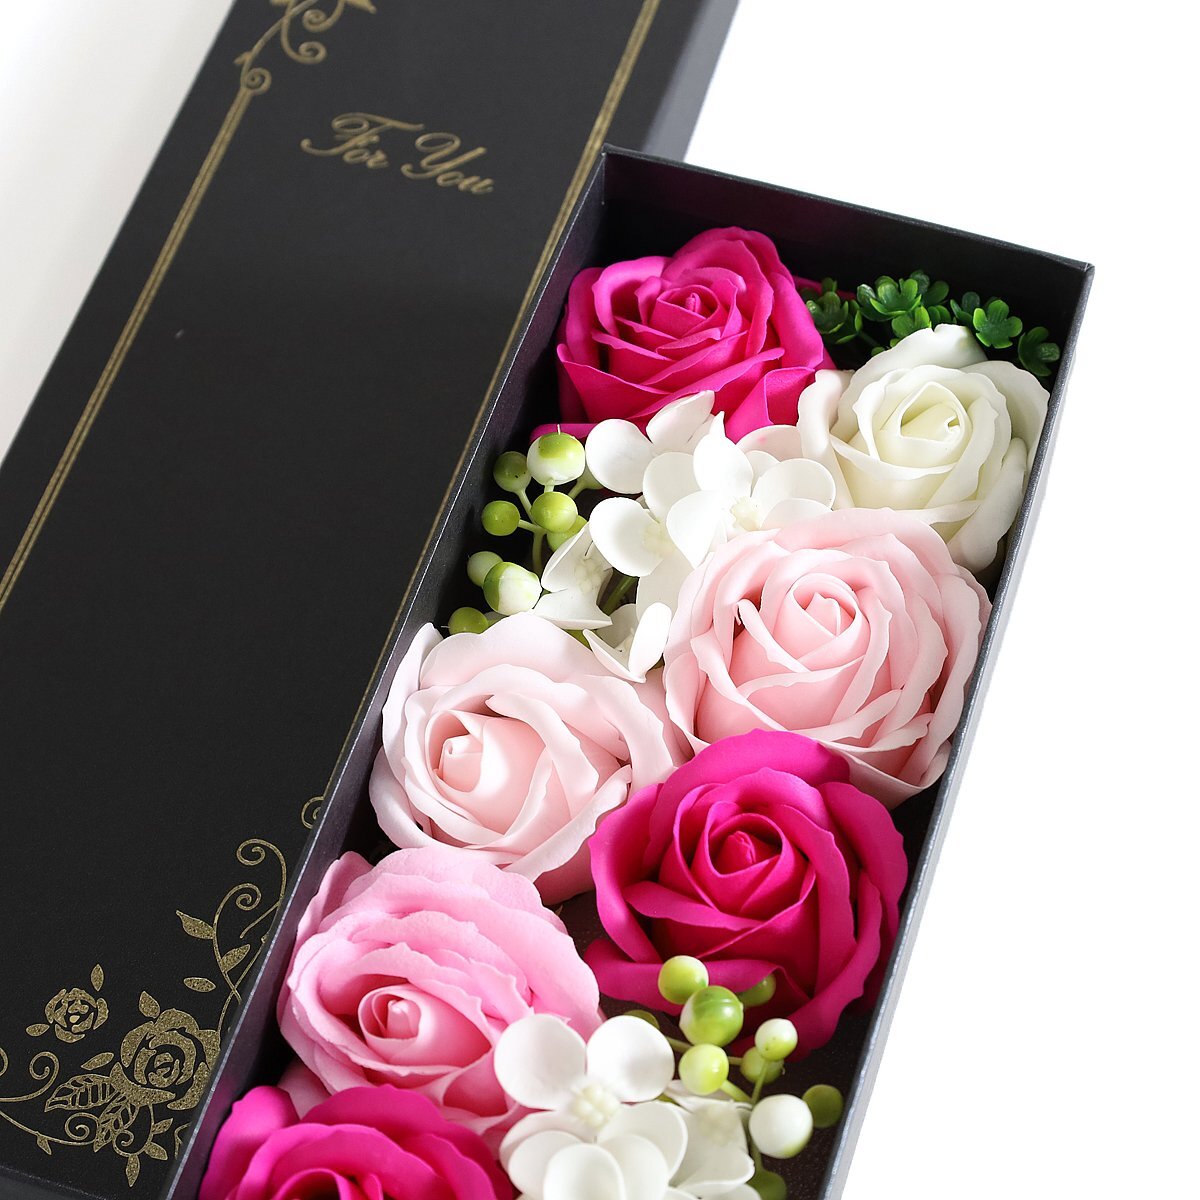  новый товар мыло материалы . мог .. нет . цветок мыло цветок длинный box мыло. аромат 32cm цветок подарок искусственный цветок подарок подарок *Bnar018